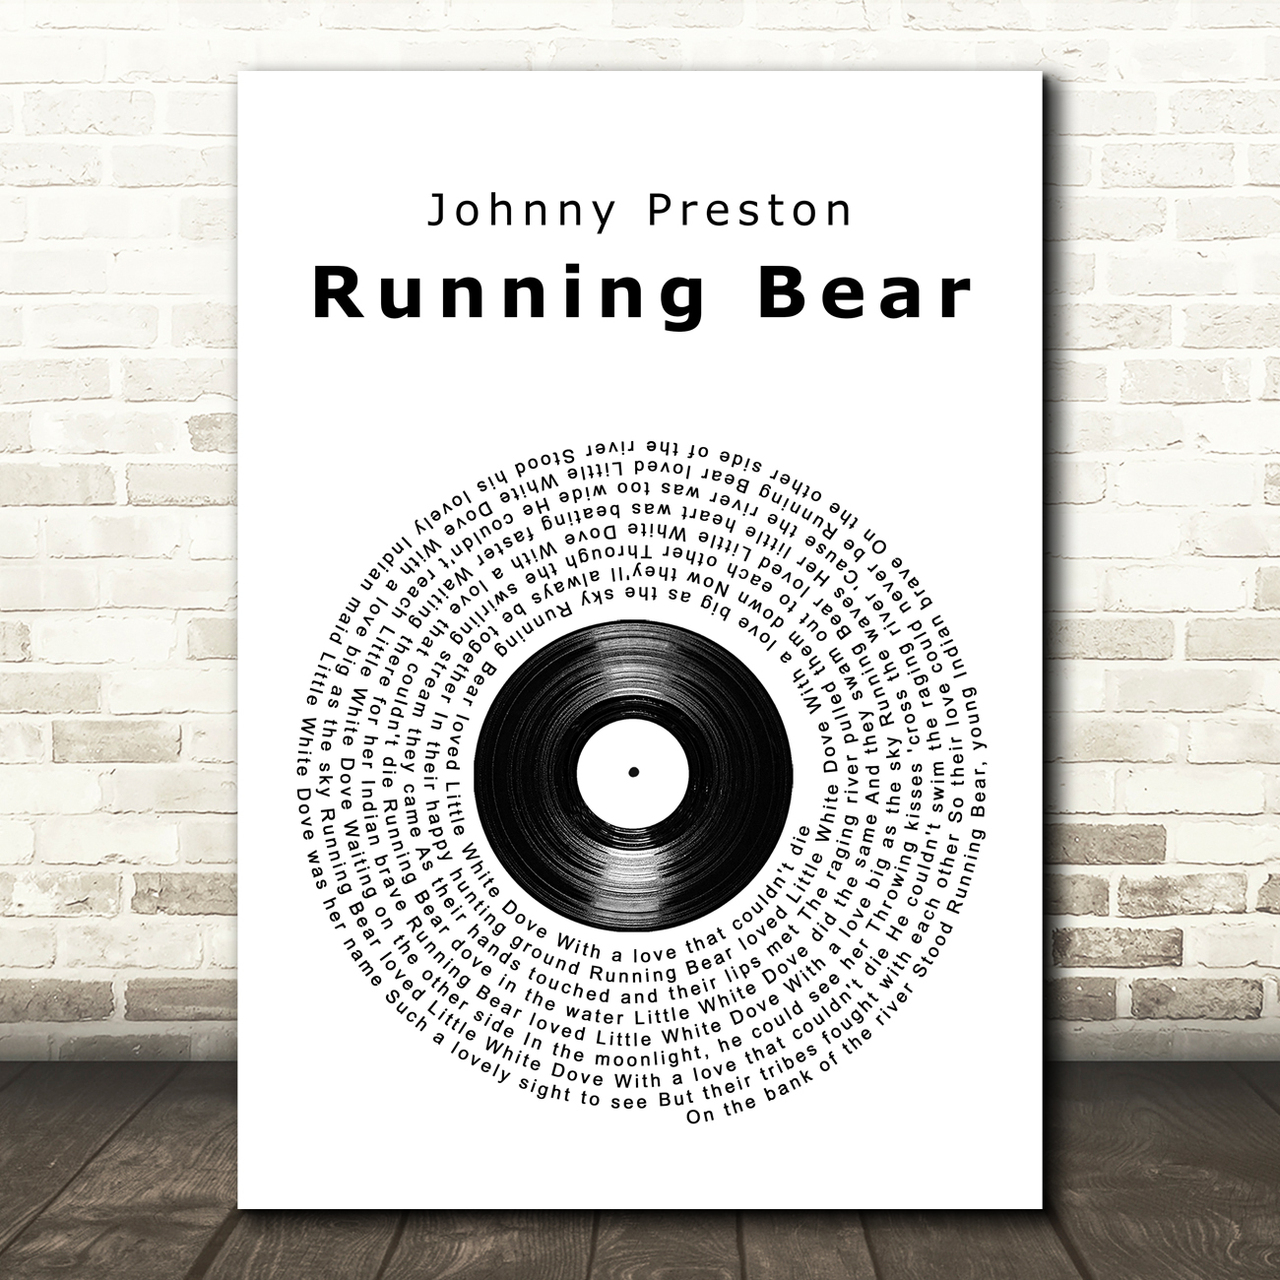 Johnny Preston Running Bear Vinyl Record Song Lyric Wall Art Print